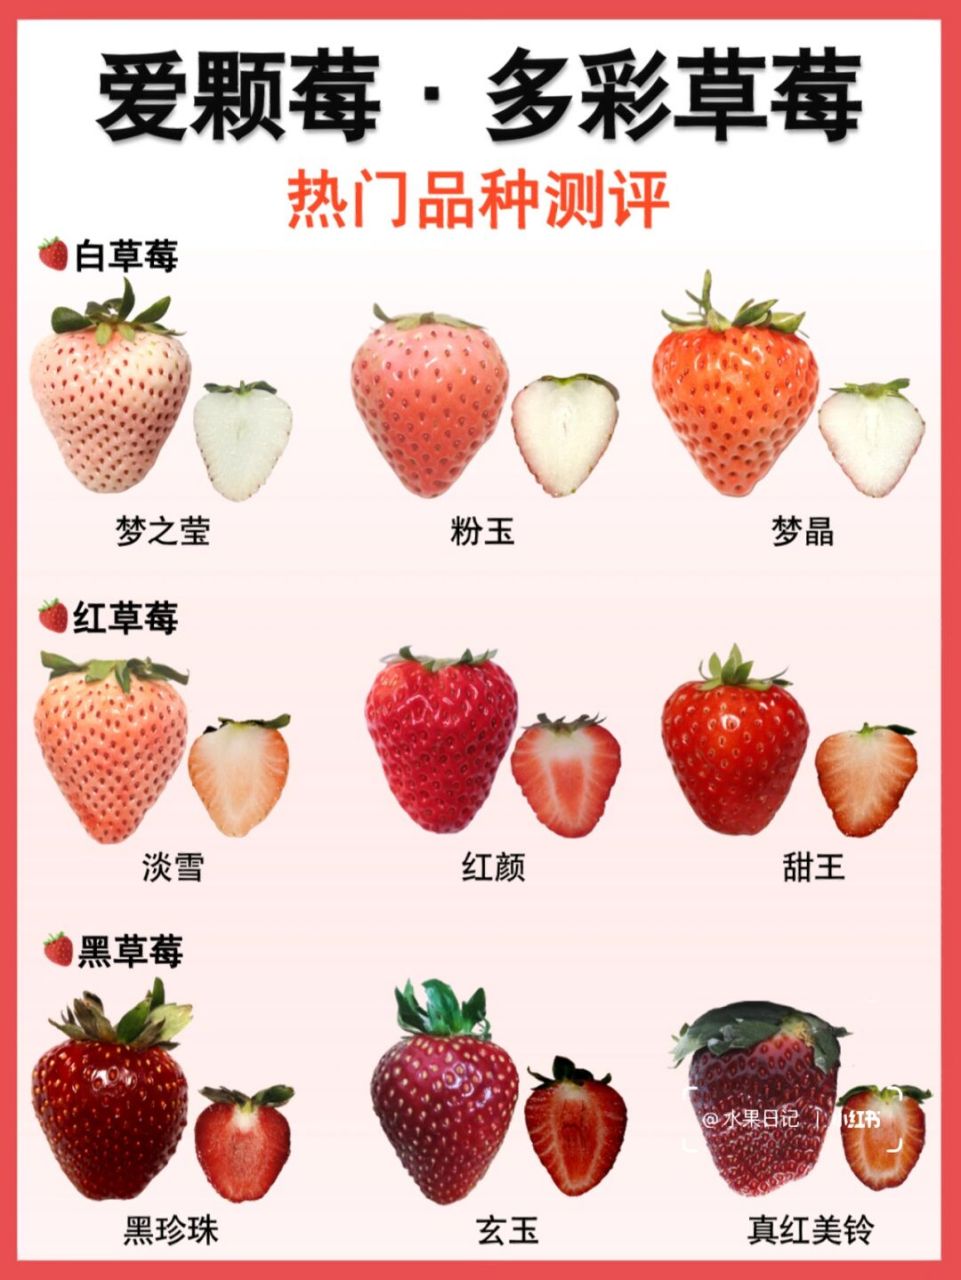 热门草莓品种测评‖解锁多个新品种草莓风味 近几年草莓的花样可多